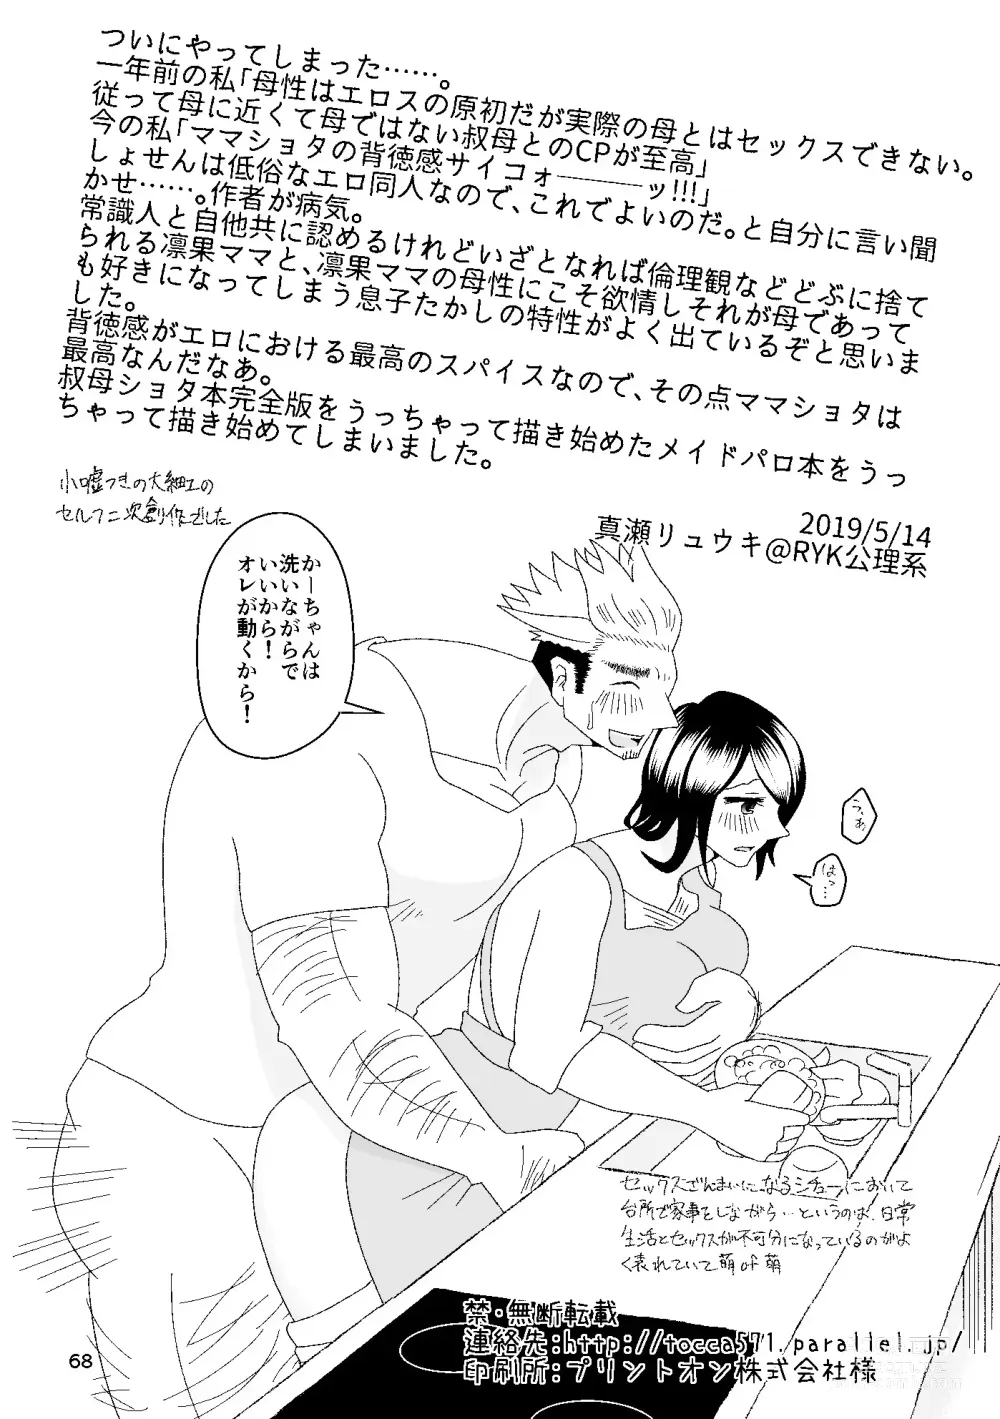 Page 69 of doujinshi Ichiban Shibori ni Nureru Hate